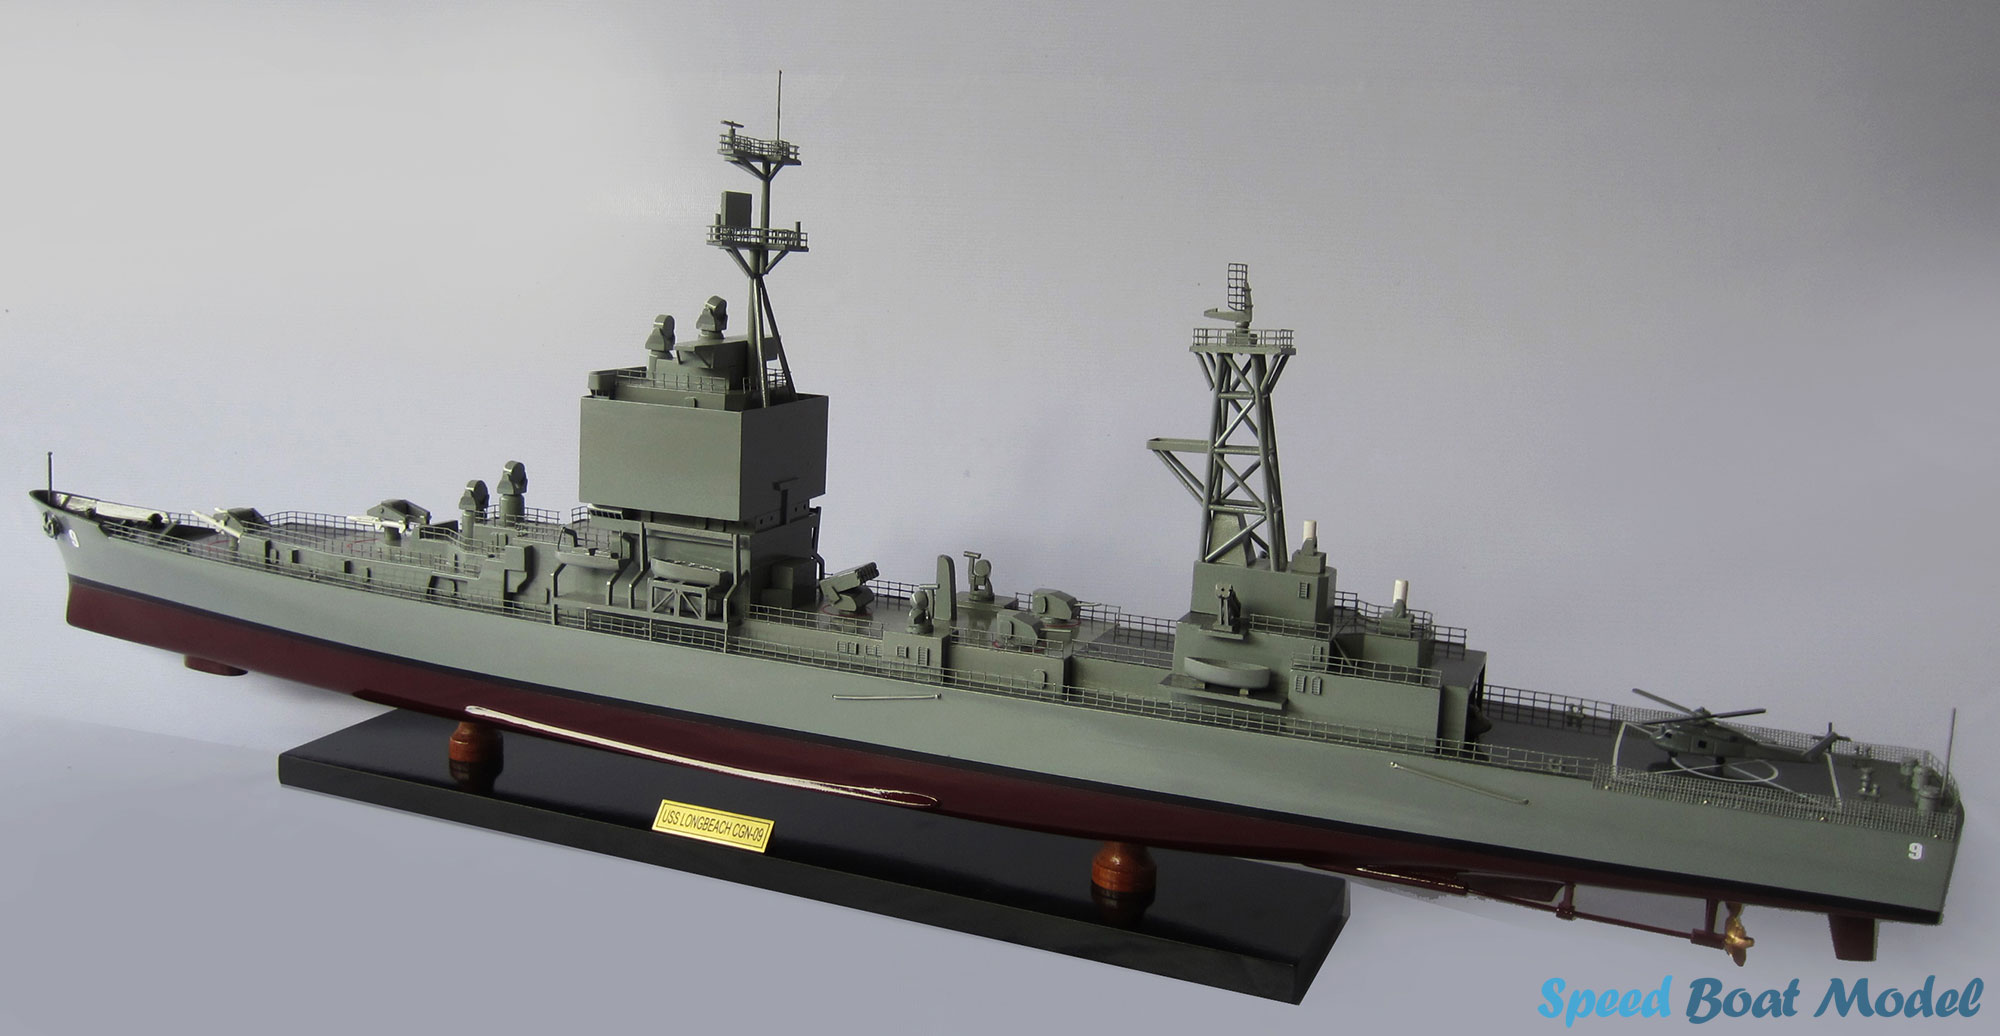 Uss Long Beach Warship Model 39.3